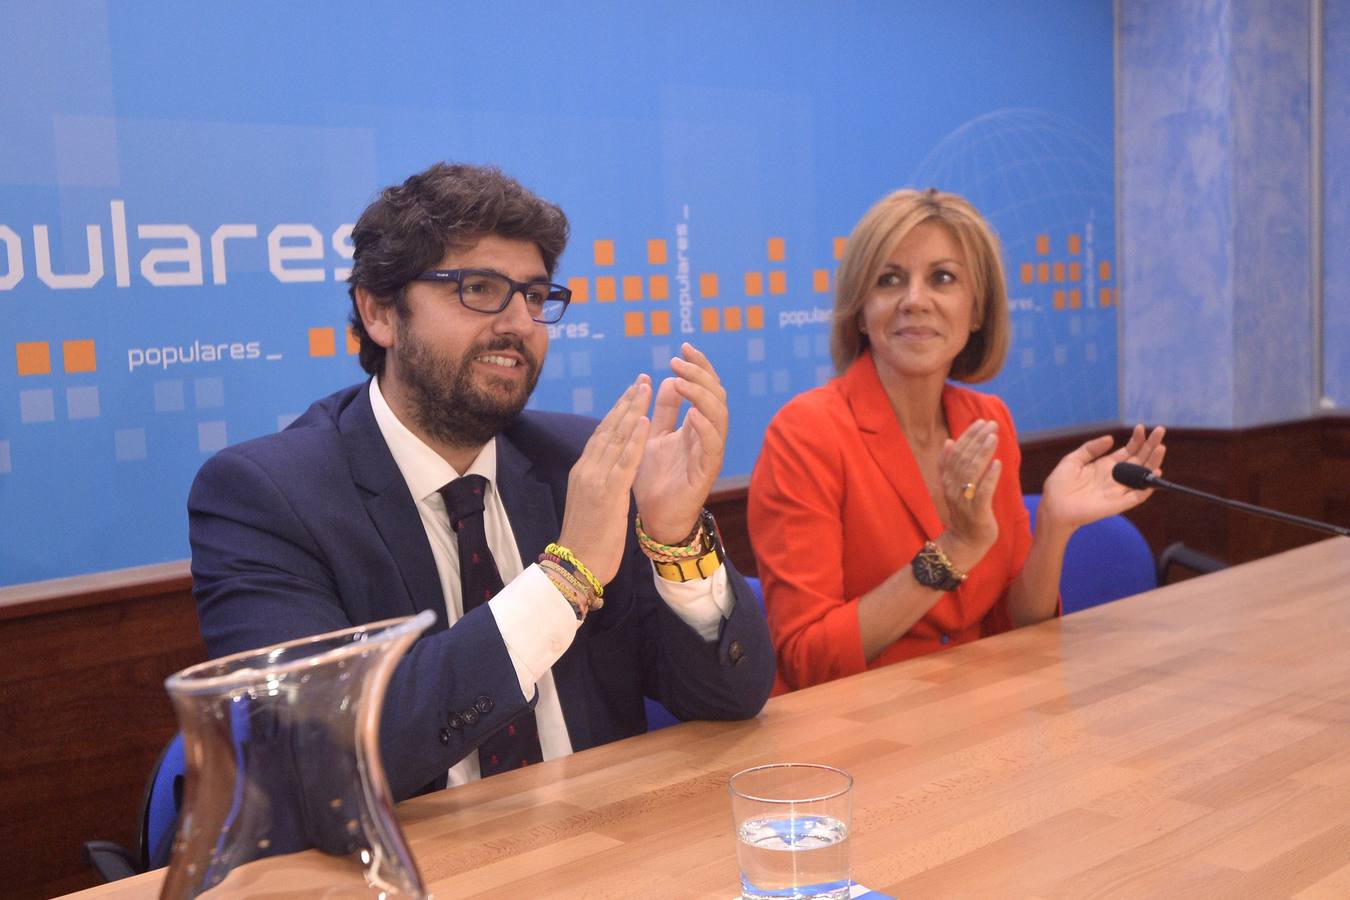 La Junta Directiva del PP, de la que forman parte cerca de 200 cargos, designó este viernes por la tarde a Fernando López Miras presidente del partido por aclamación